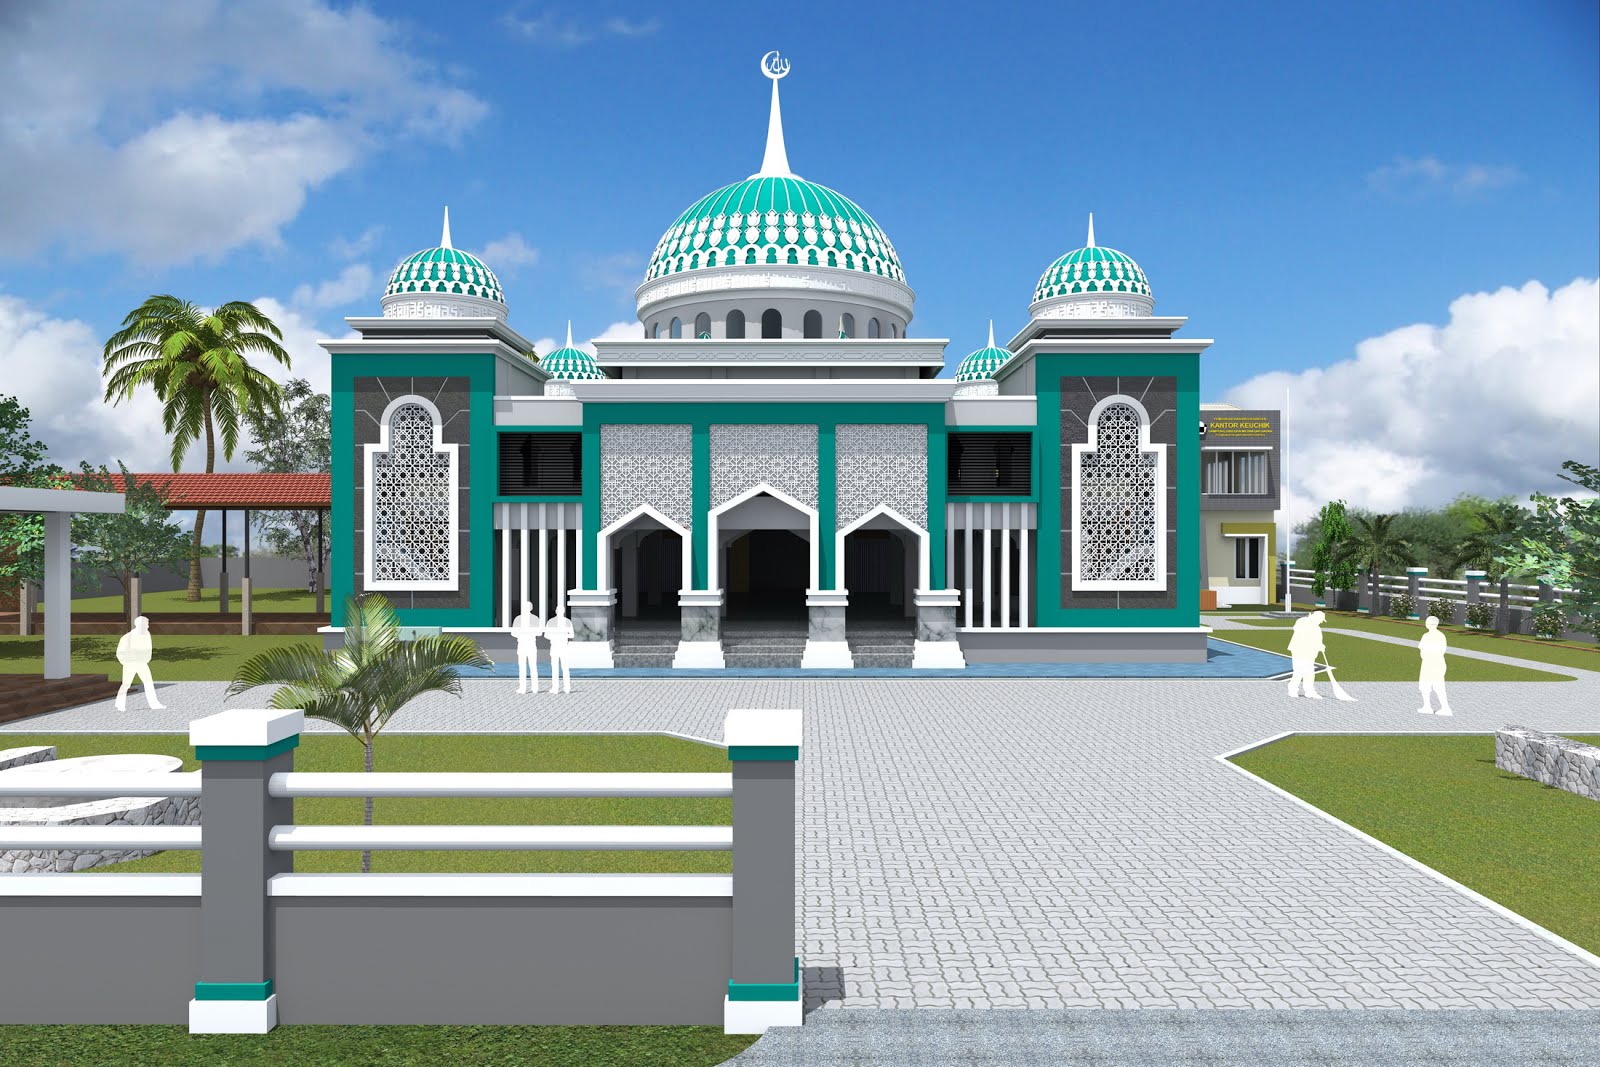 30 Model Masjid Minimalis Dengan Model Masjid Modern dari Seluruh Dunia, WAJIB BACA